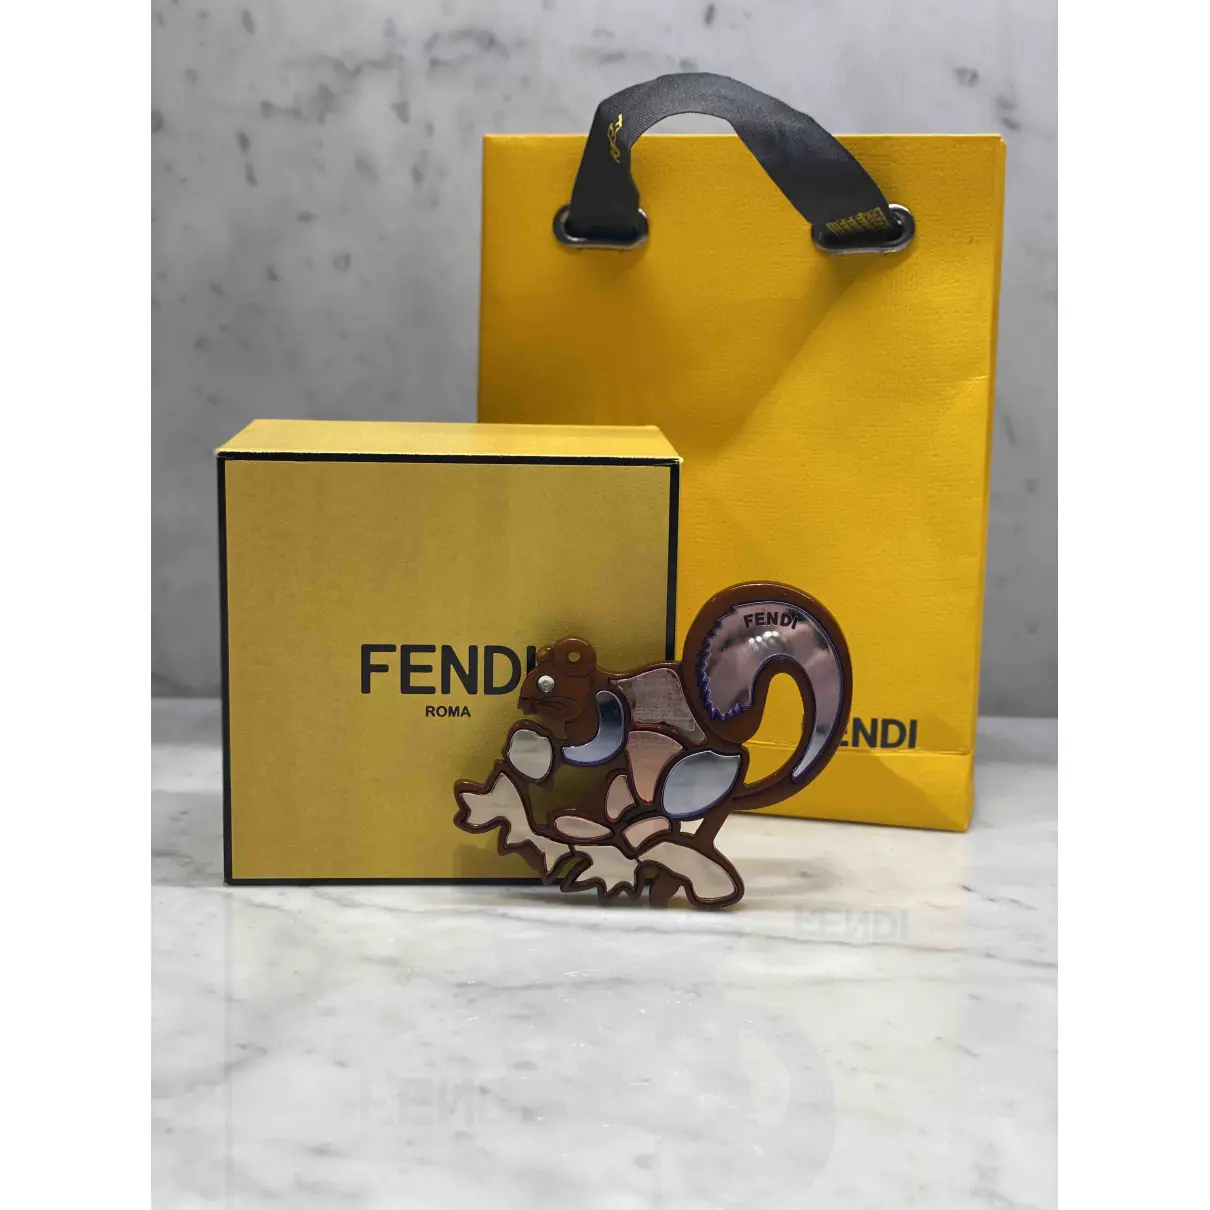 Buy Fendi Pin & brooche online